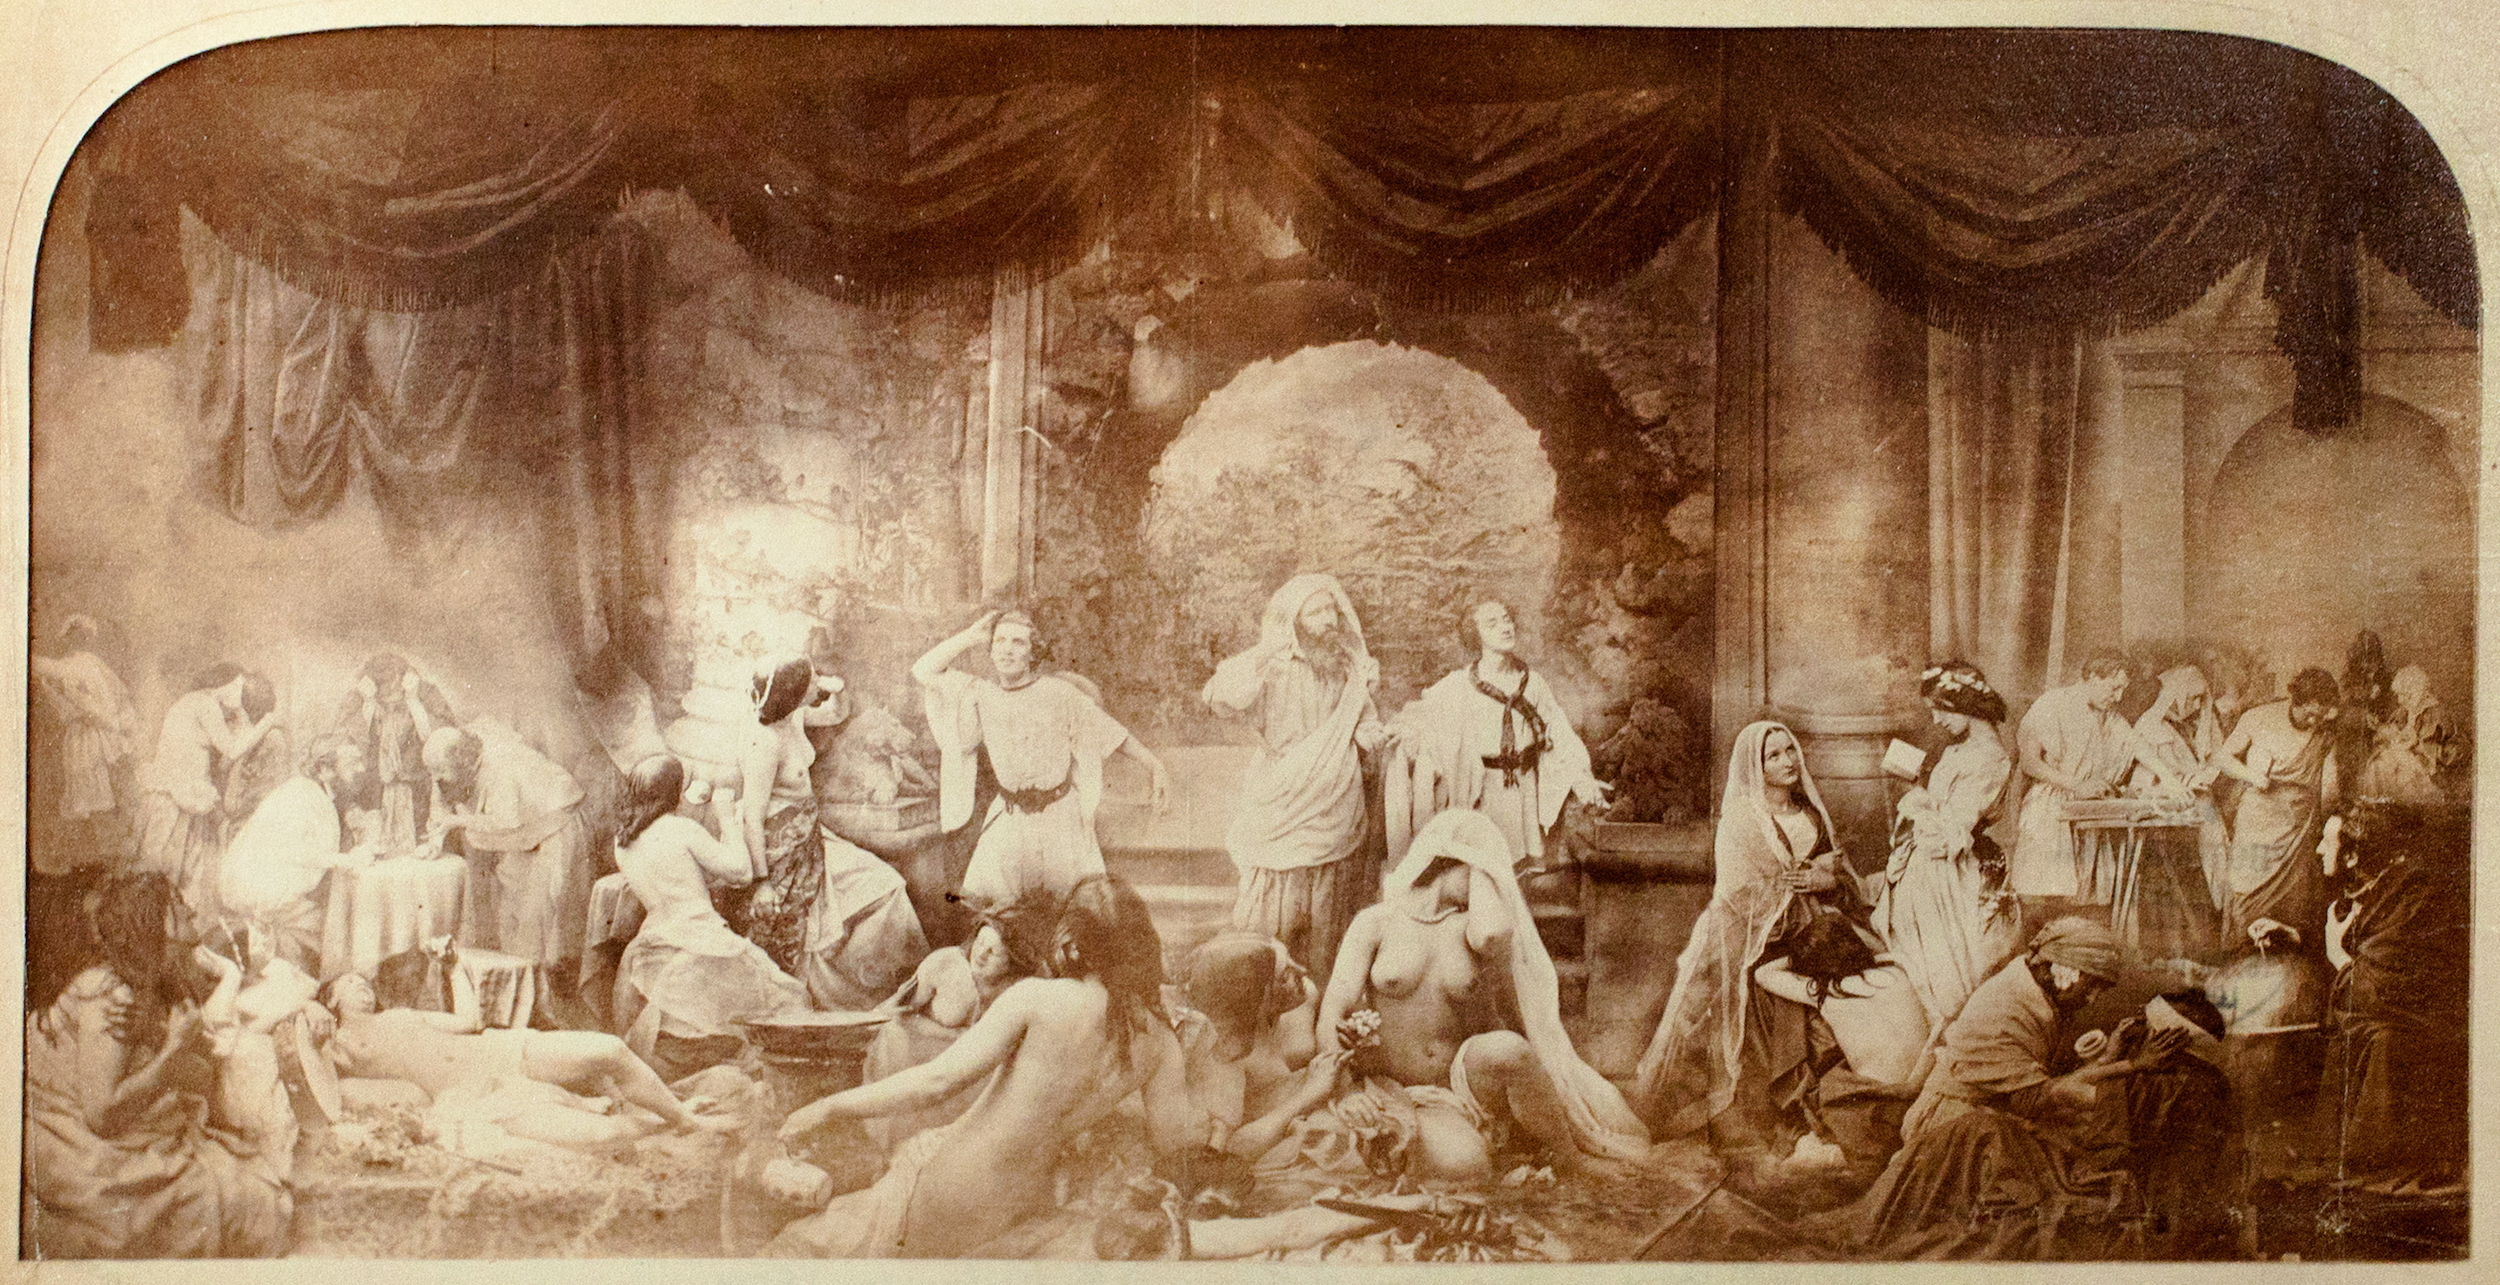 Samengestelde beelden 1850-1935 – De vroege geschiedenis van fotomontage by Oscar Gustave Rejlander - 1858 - 41,0 x 79,0 cm 